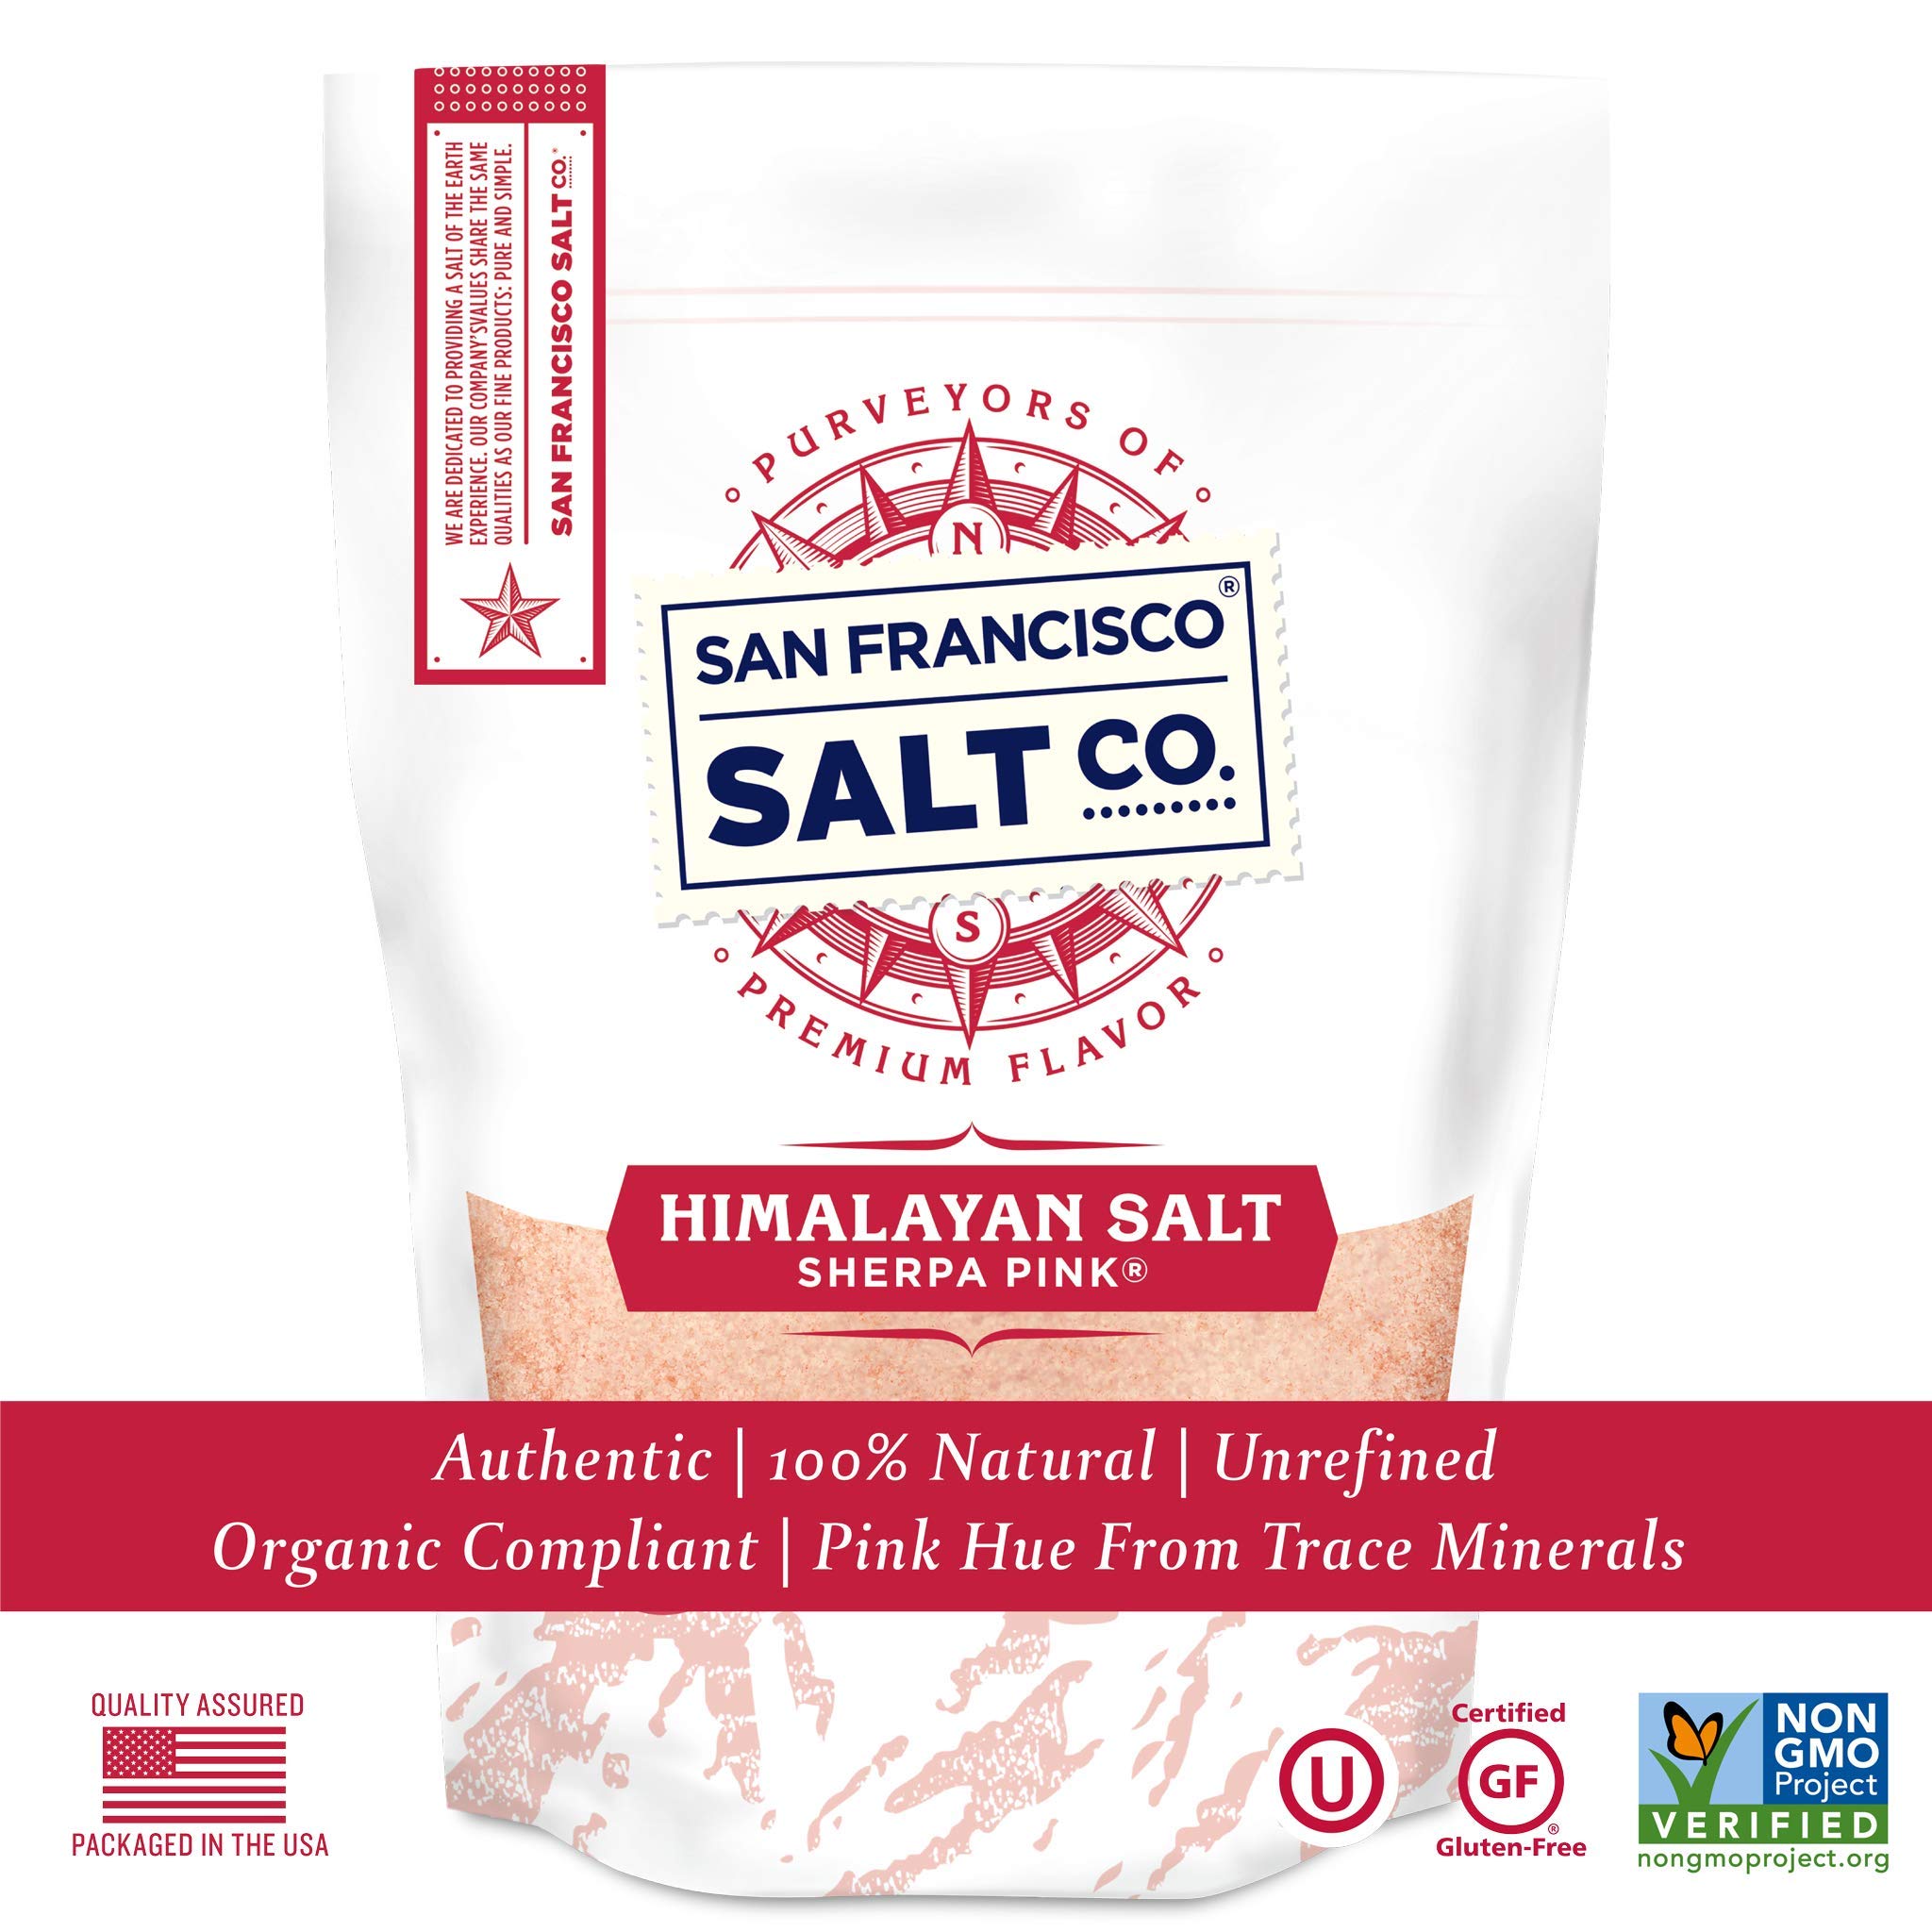 Sherpa Pink Himalayan Salt - 10 lb. Bulk Bag Fine Grain